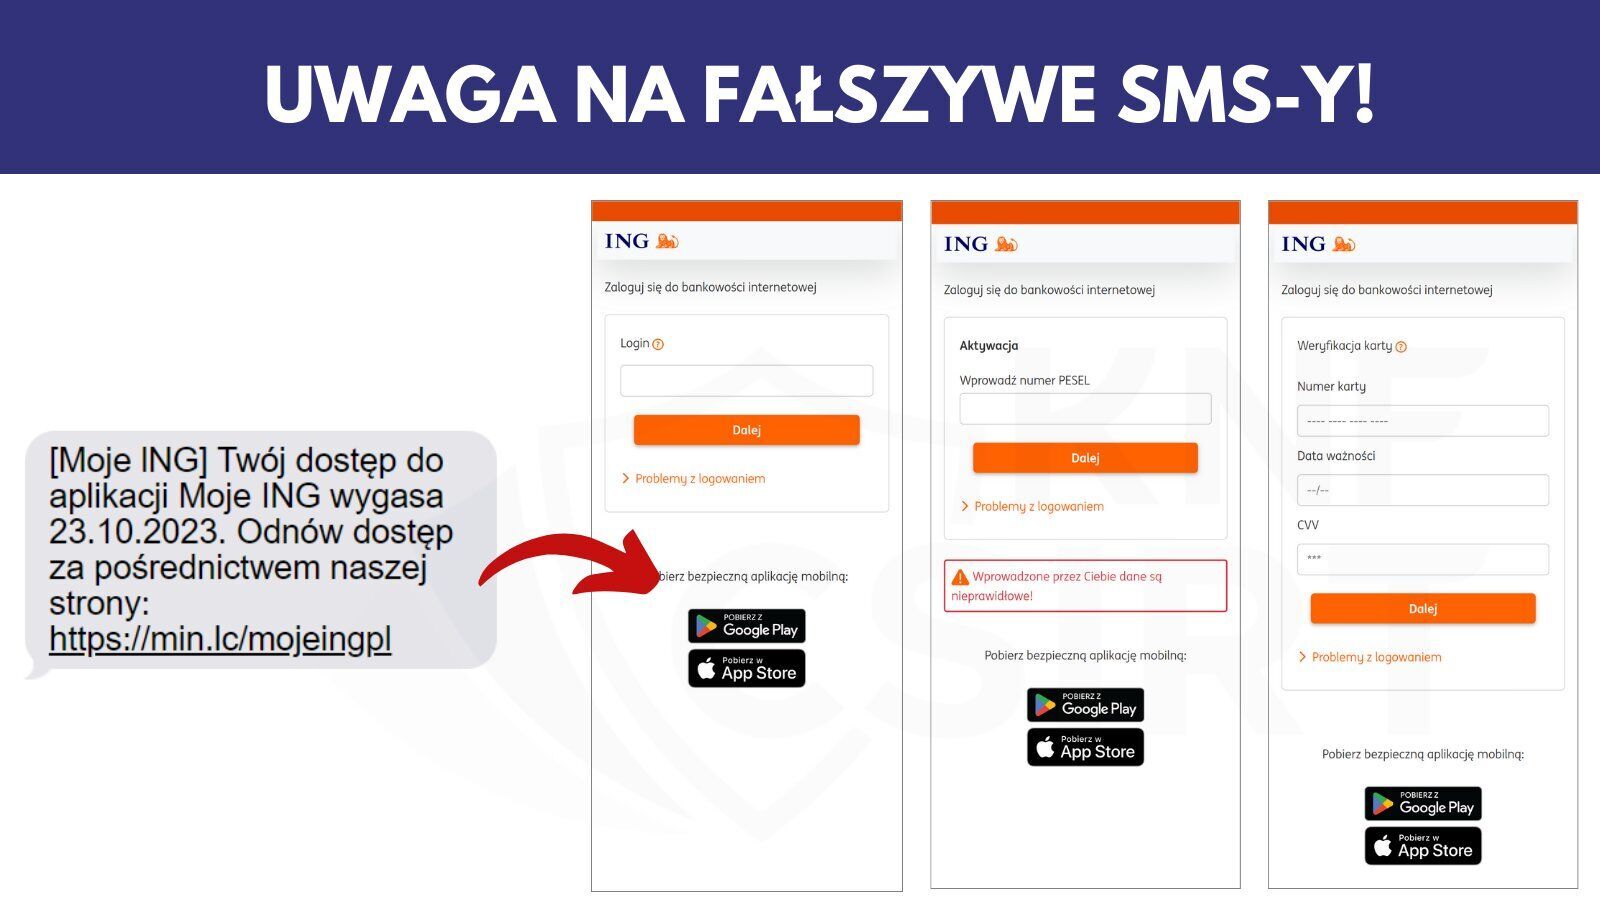 Как выглядят SMS и фальшивый сайт